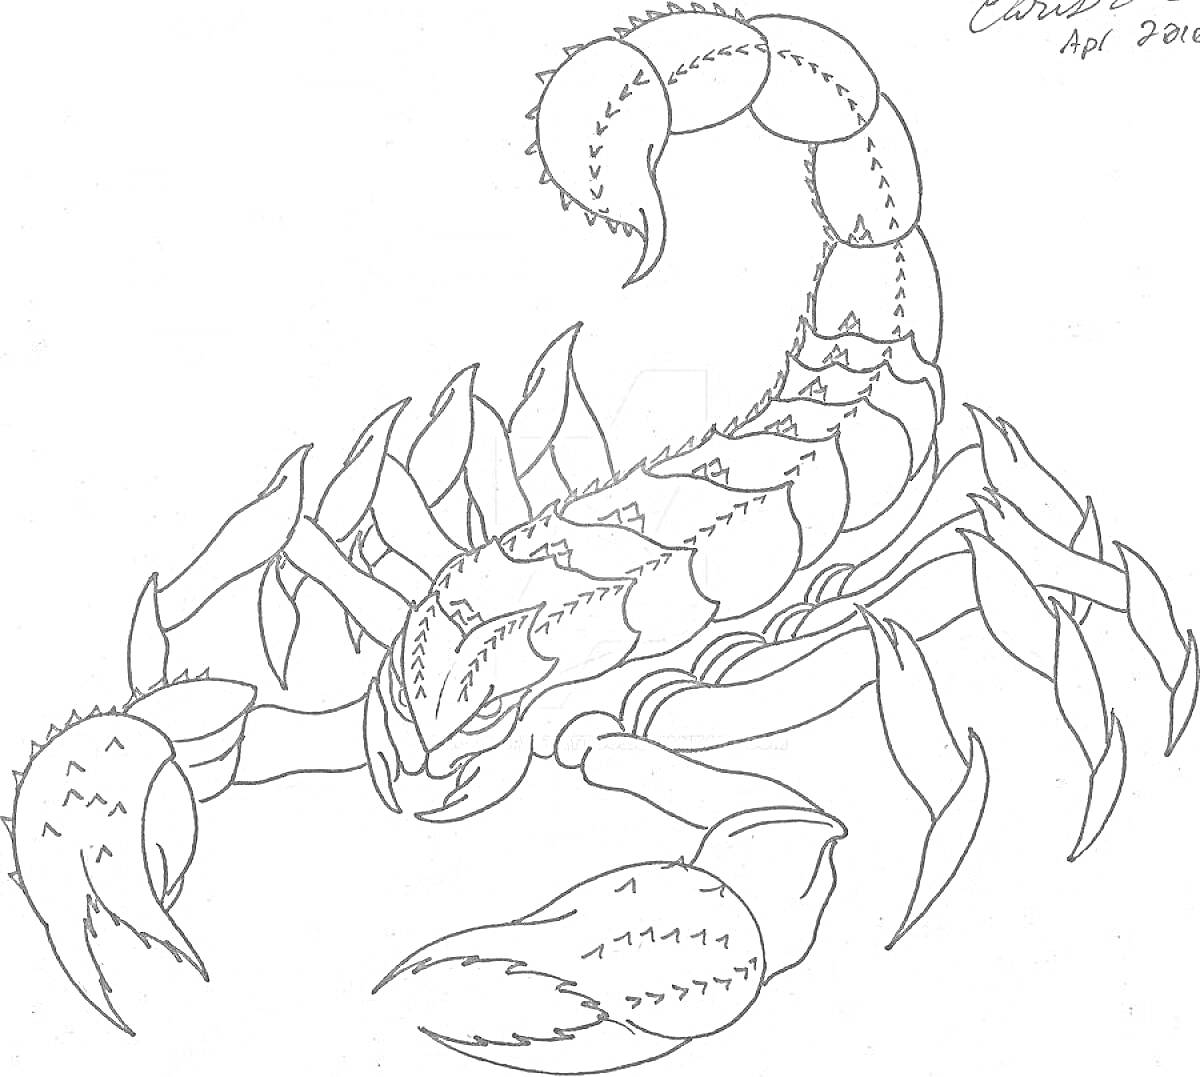 Раскраска скорпион с клешнями и раздвоенным хвостом, с детализированными сегментированными частями тела и количеством ног шесть